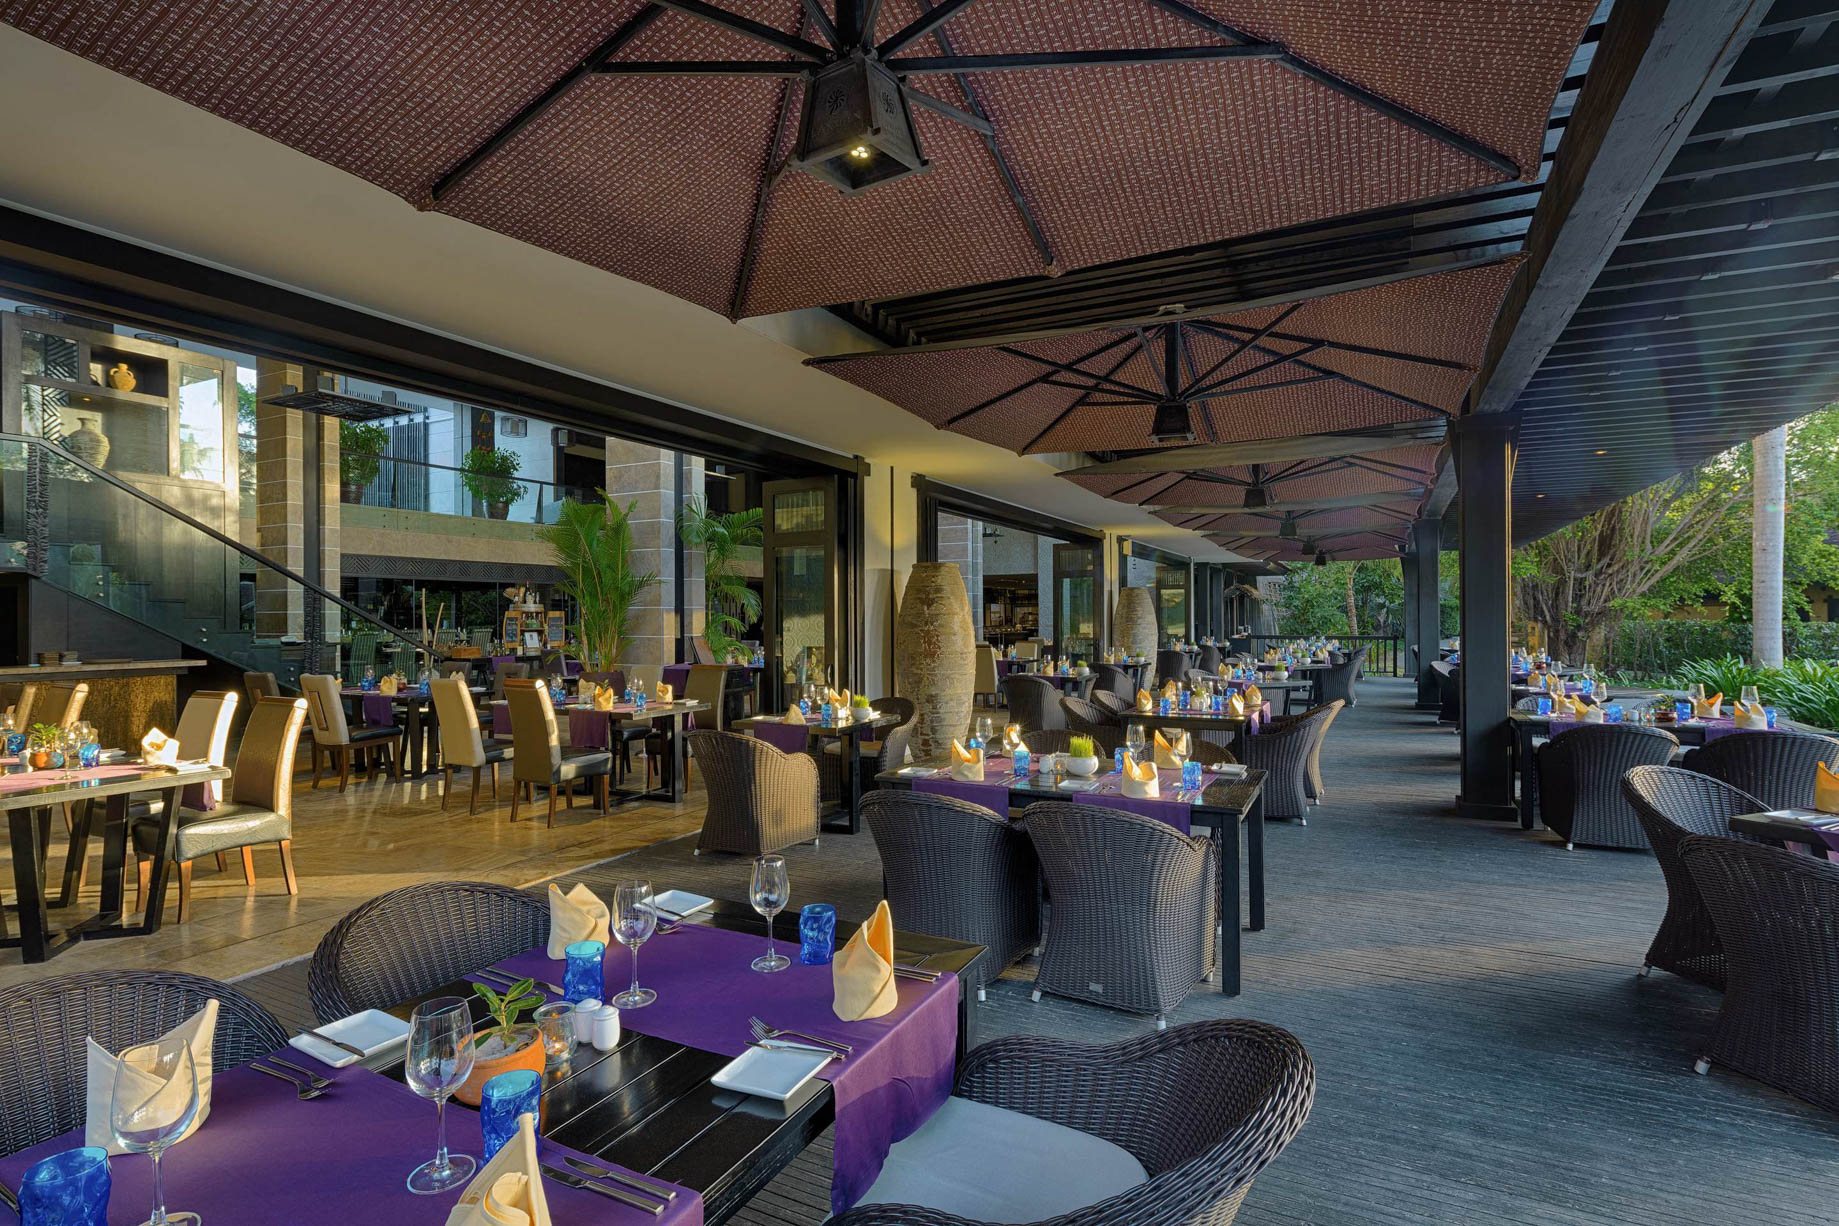 Anantara Mui Ne Resort - Phan Thiet, Vietnam - Restaurant Terrace